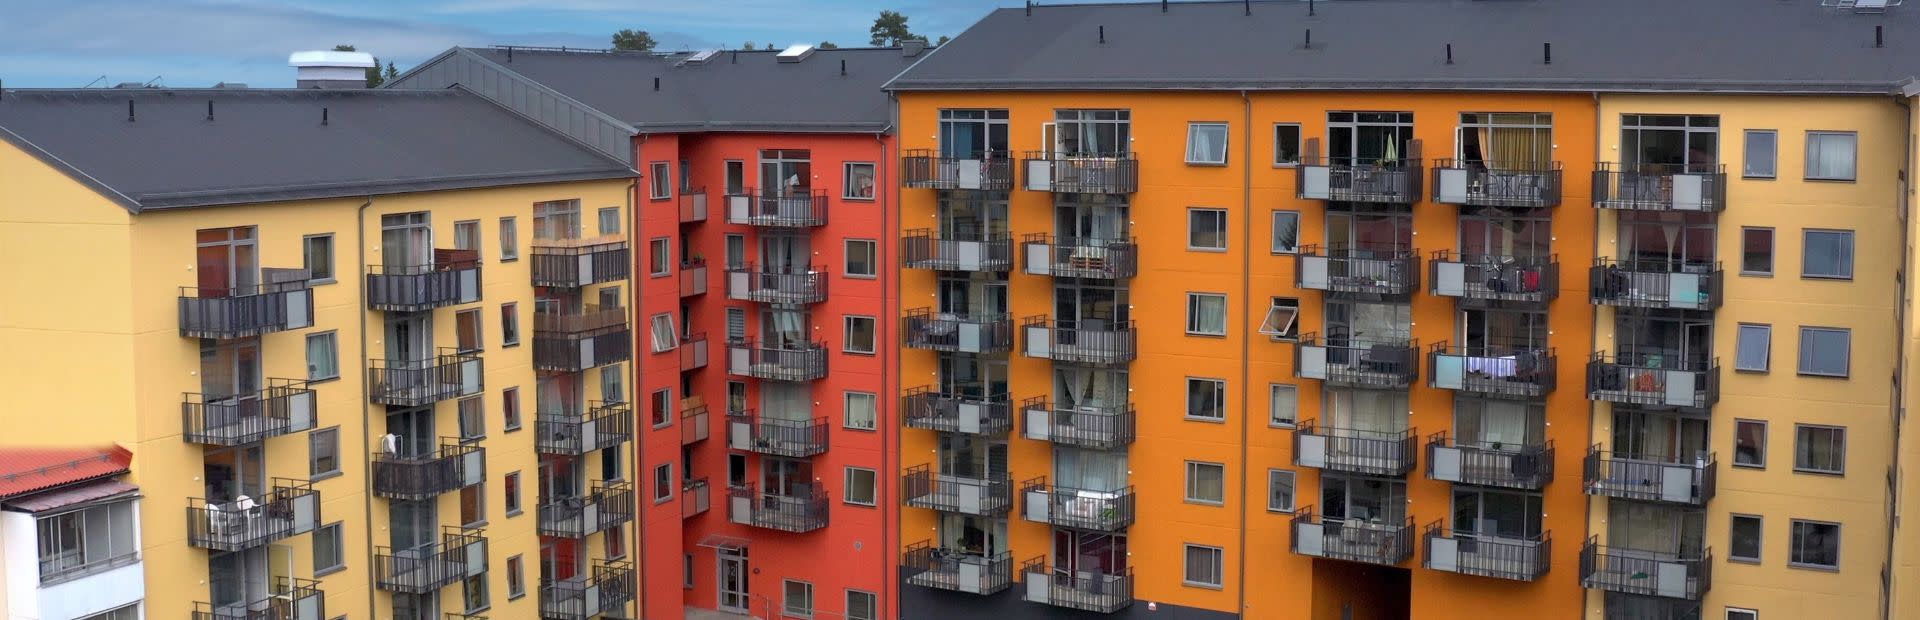 Fasader på flervåningshus i brunröda toner